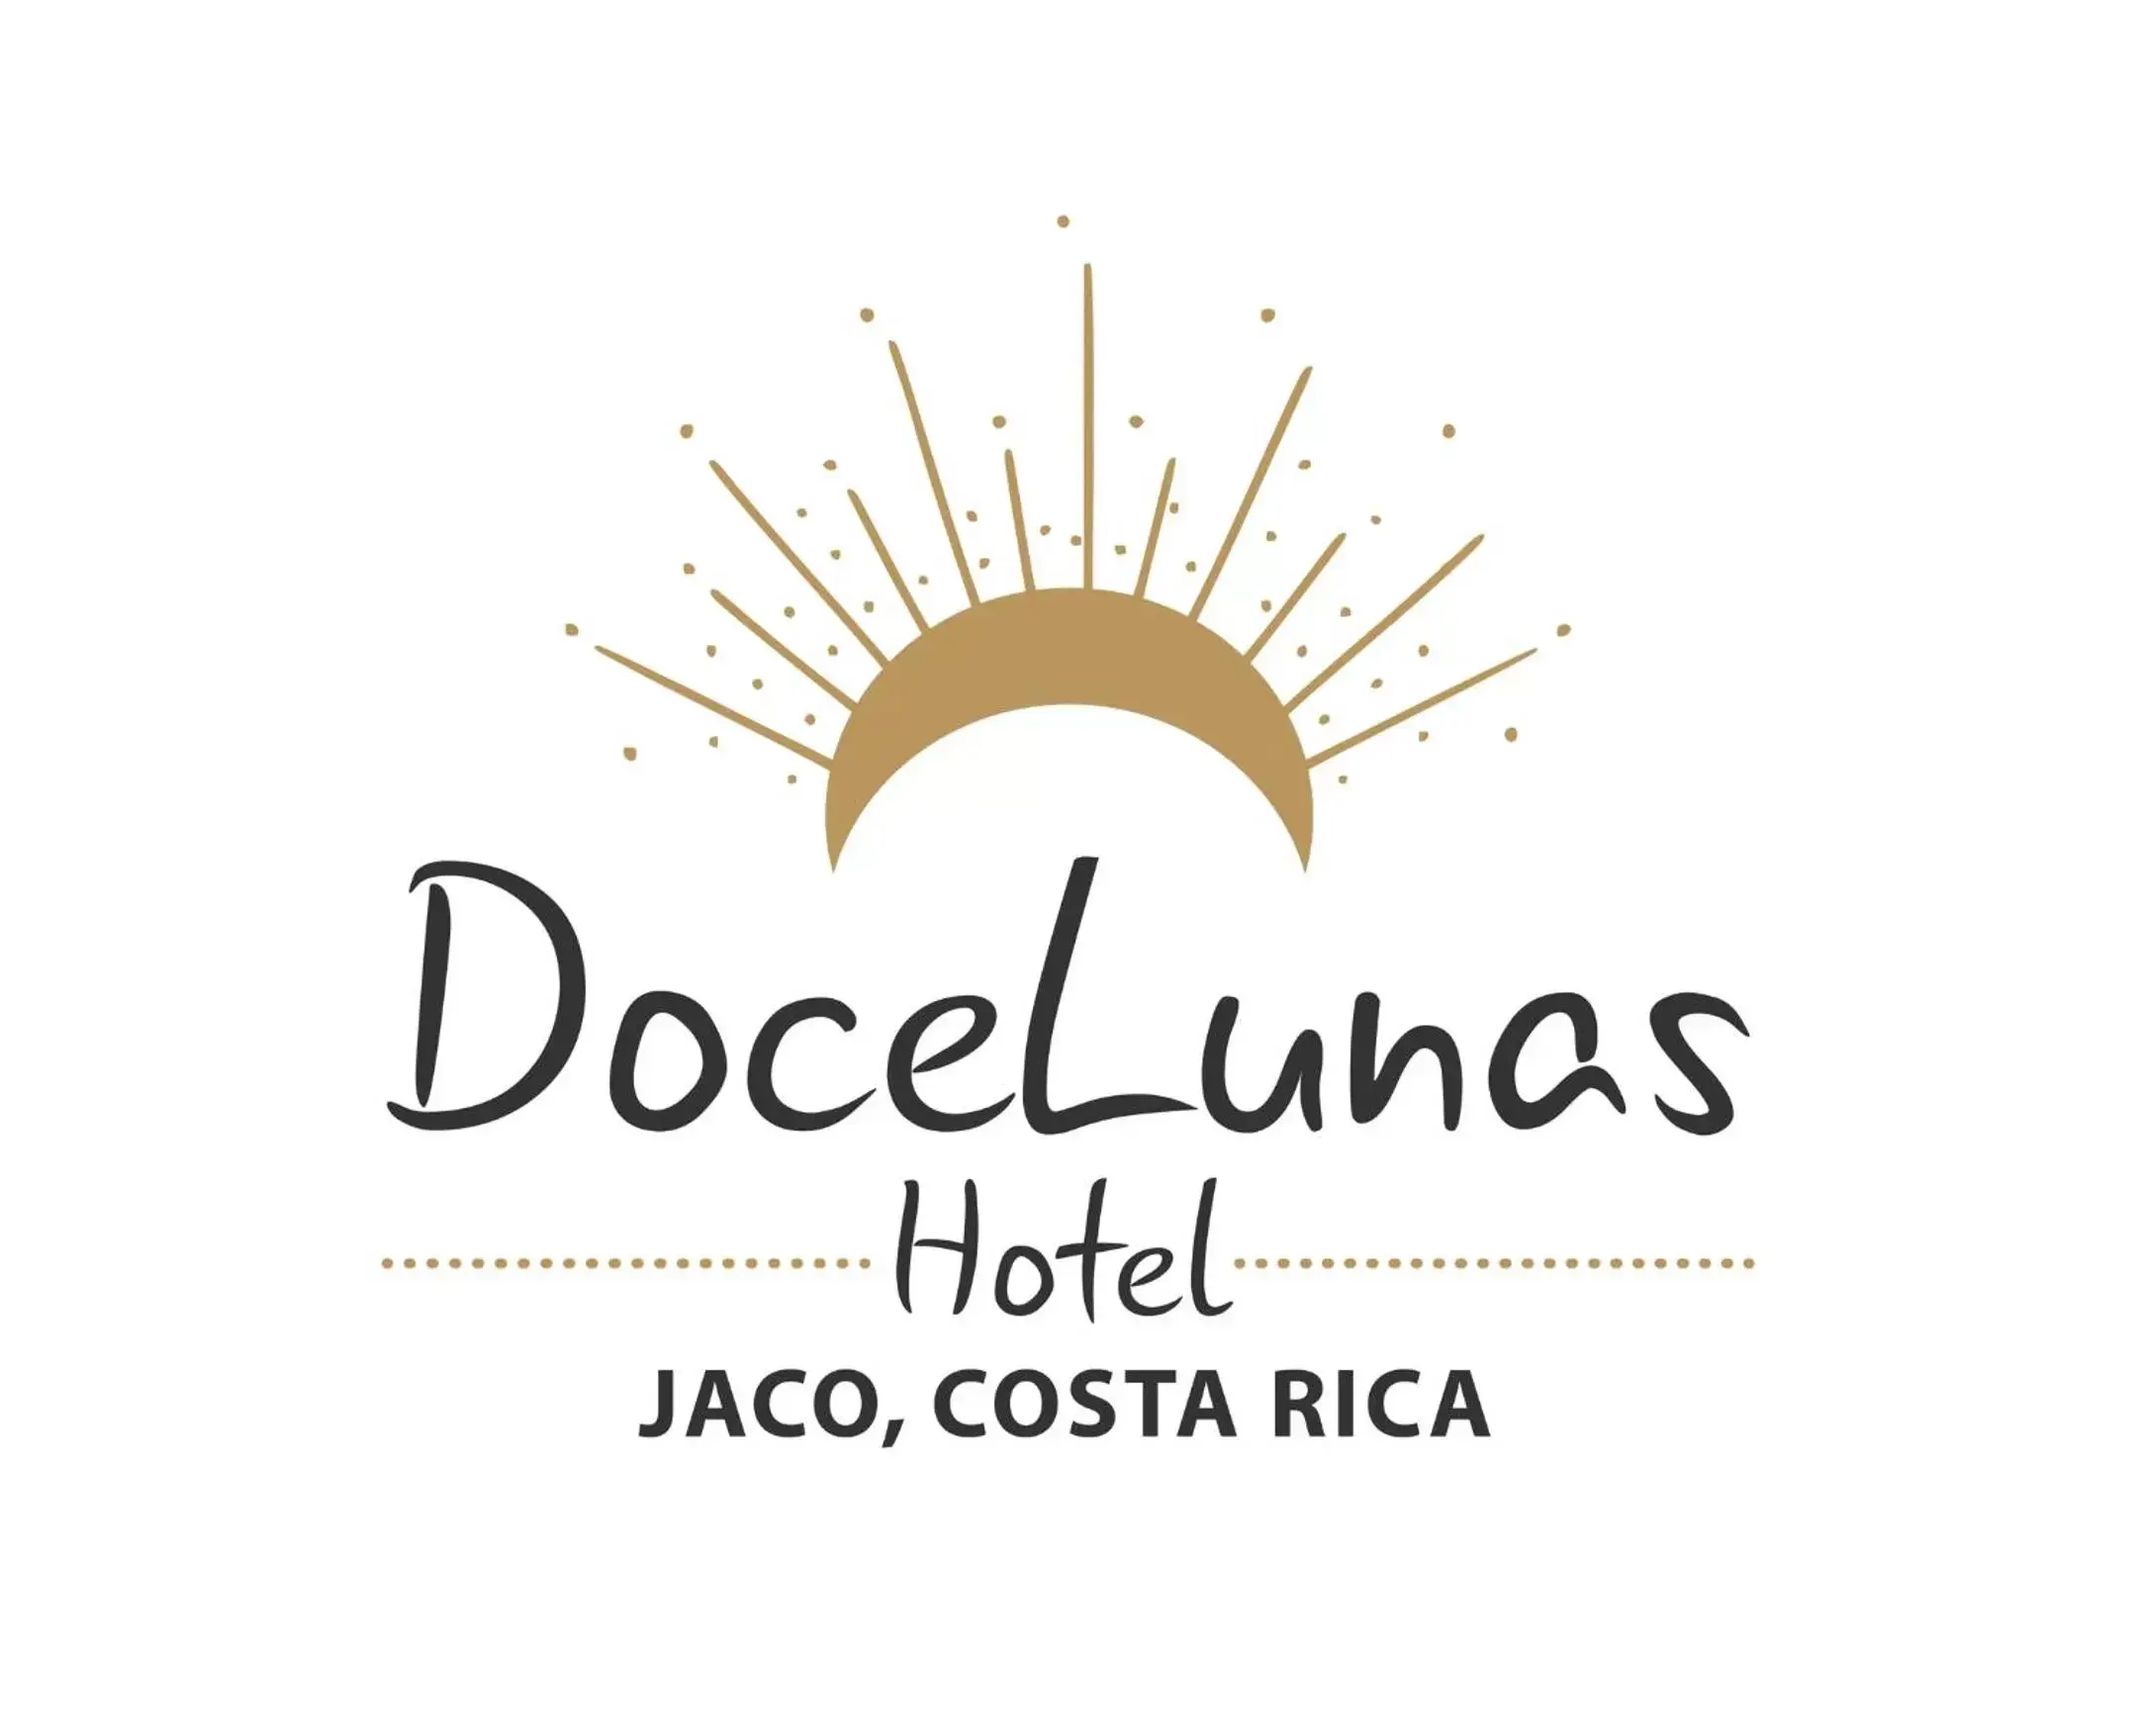 Property logo or sign in Jaco Hotel DoceLunas